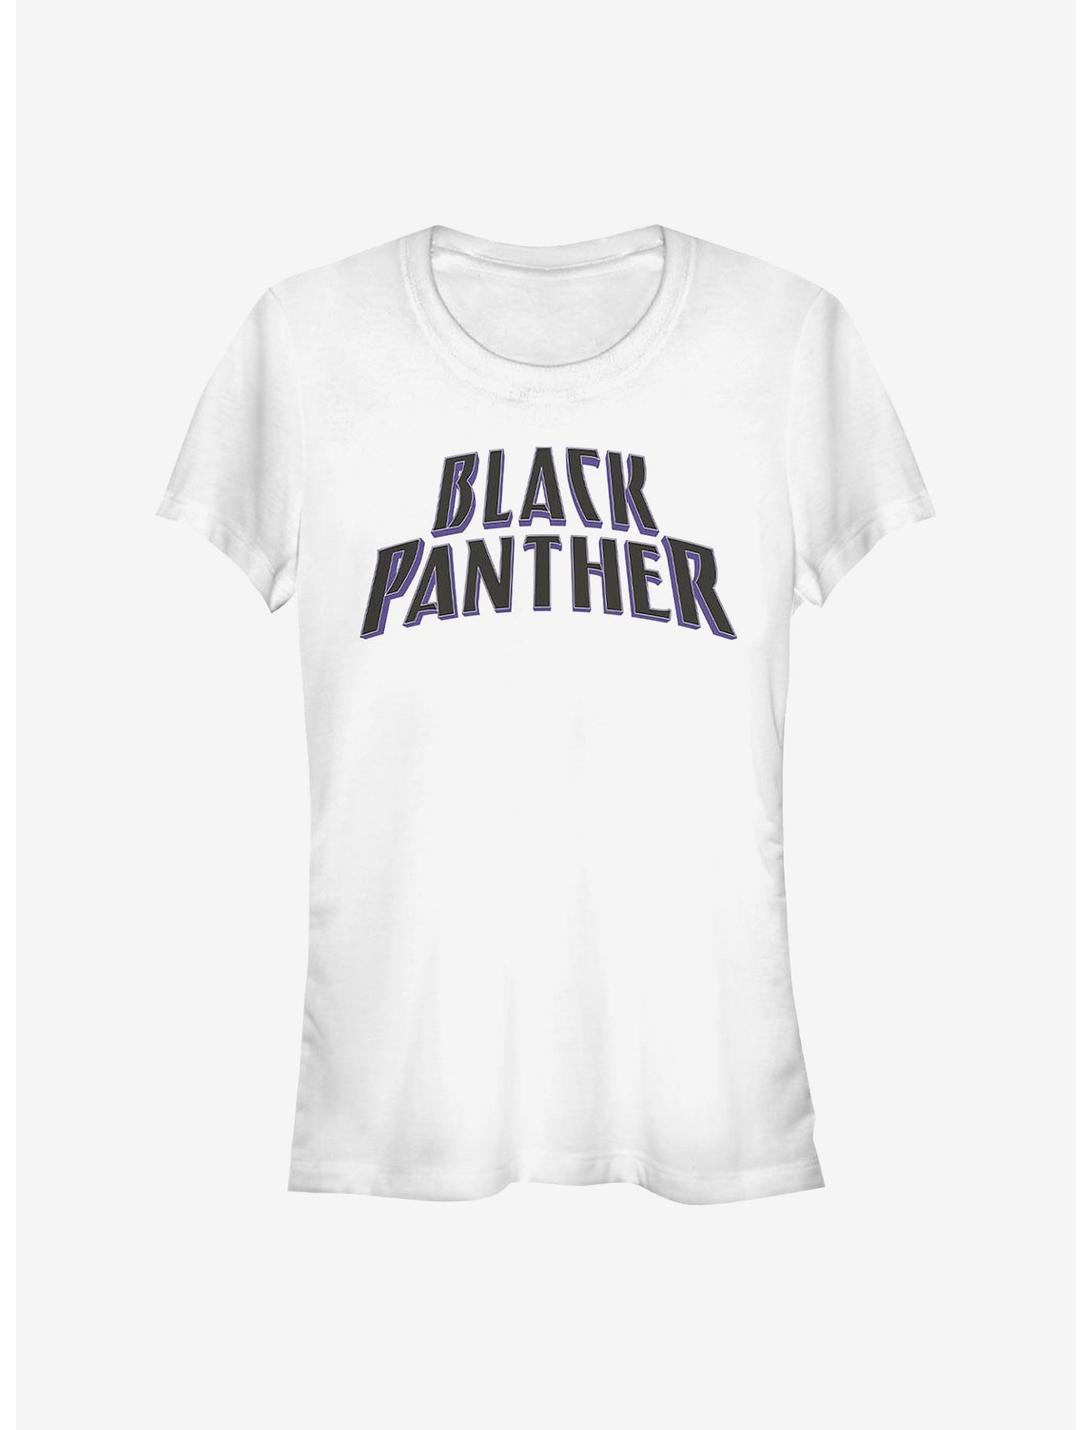 Marvel Black Panther Text Logo Girls T-Shirt, WHITE, hi-res